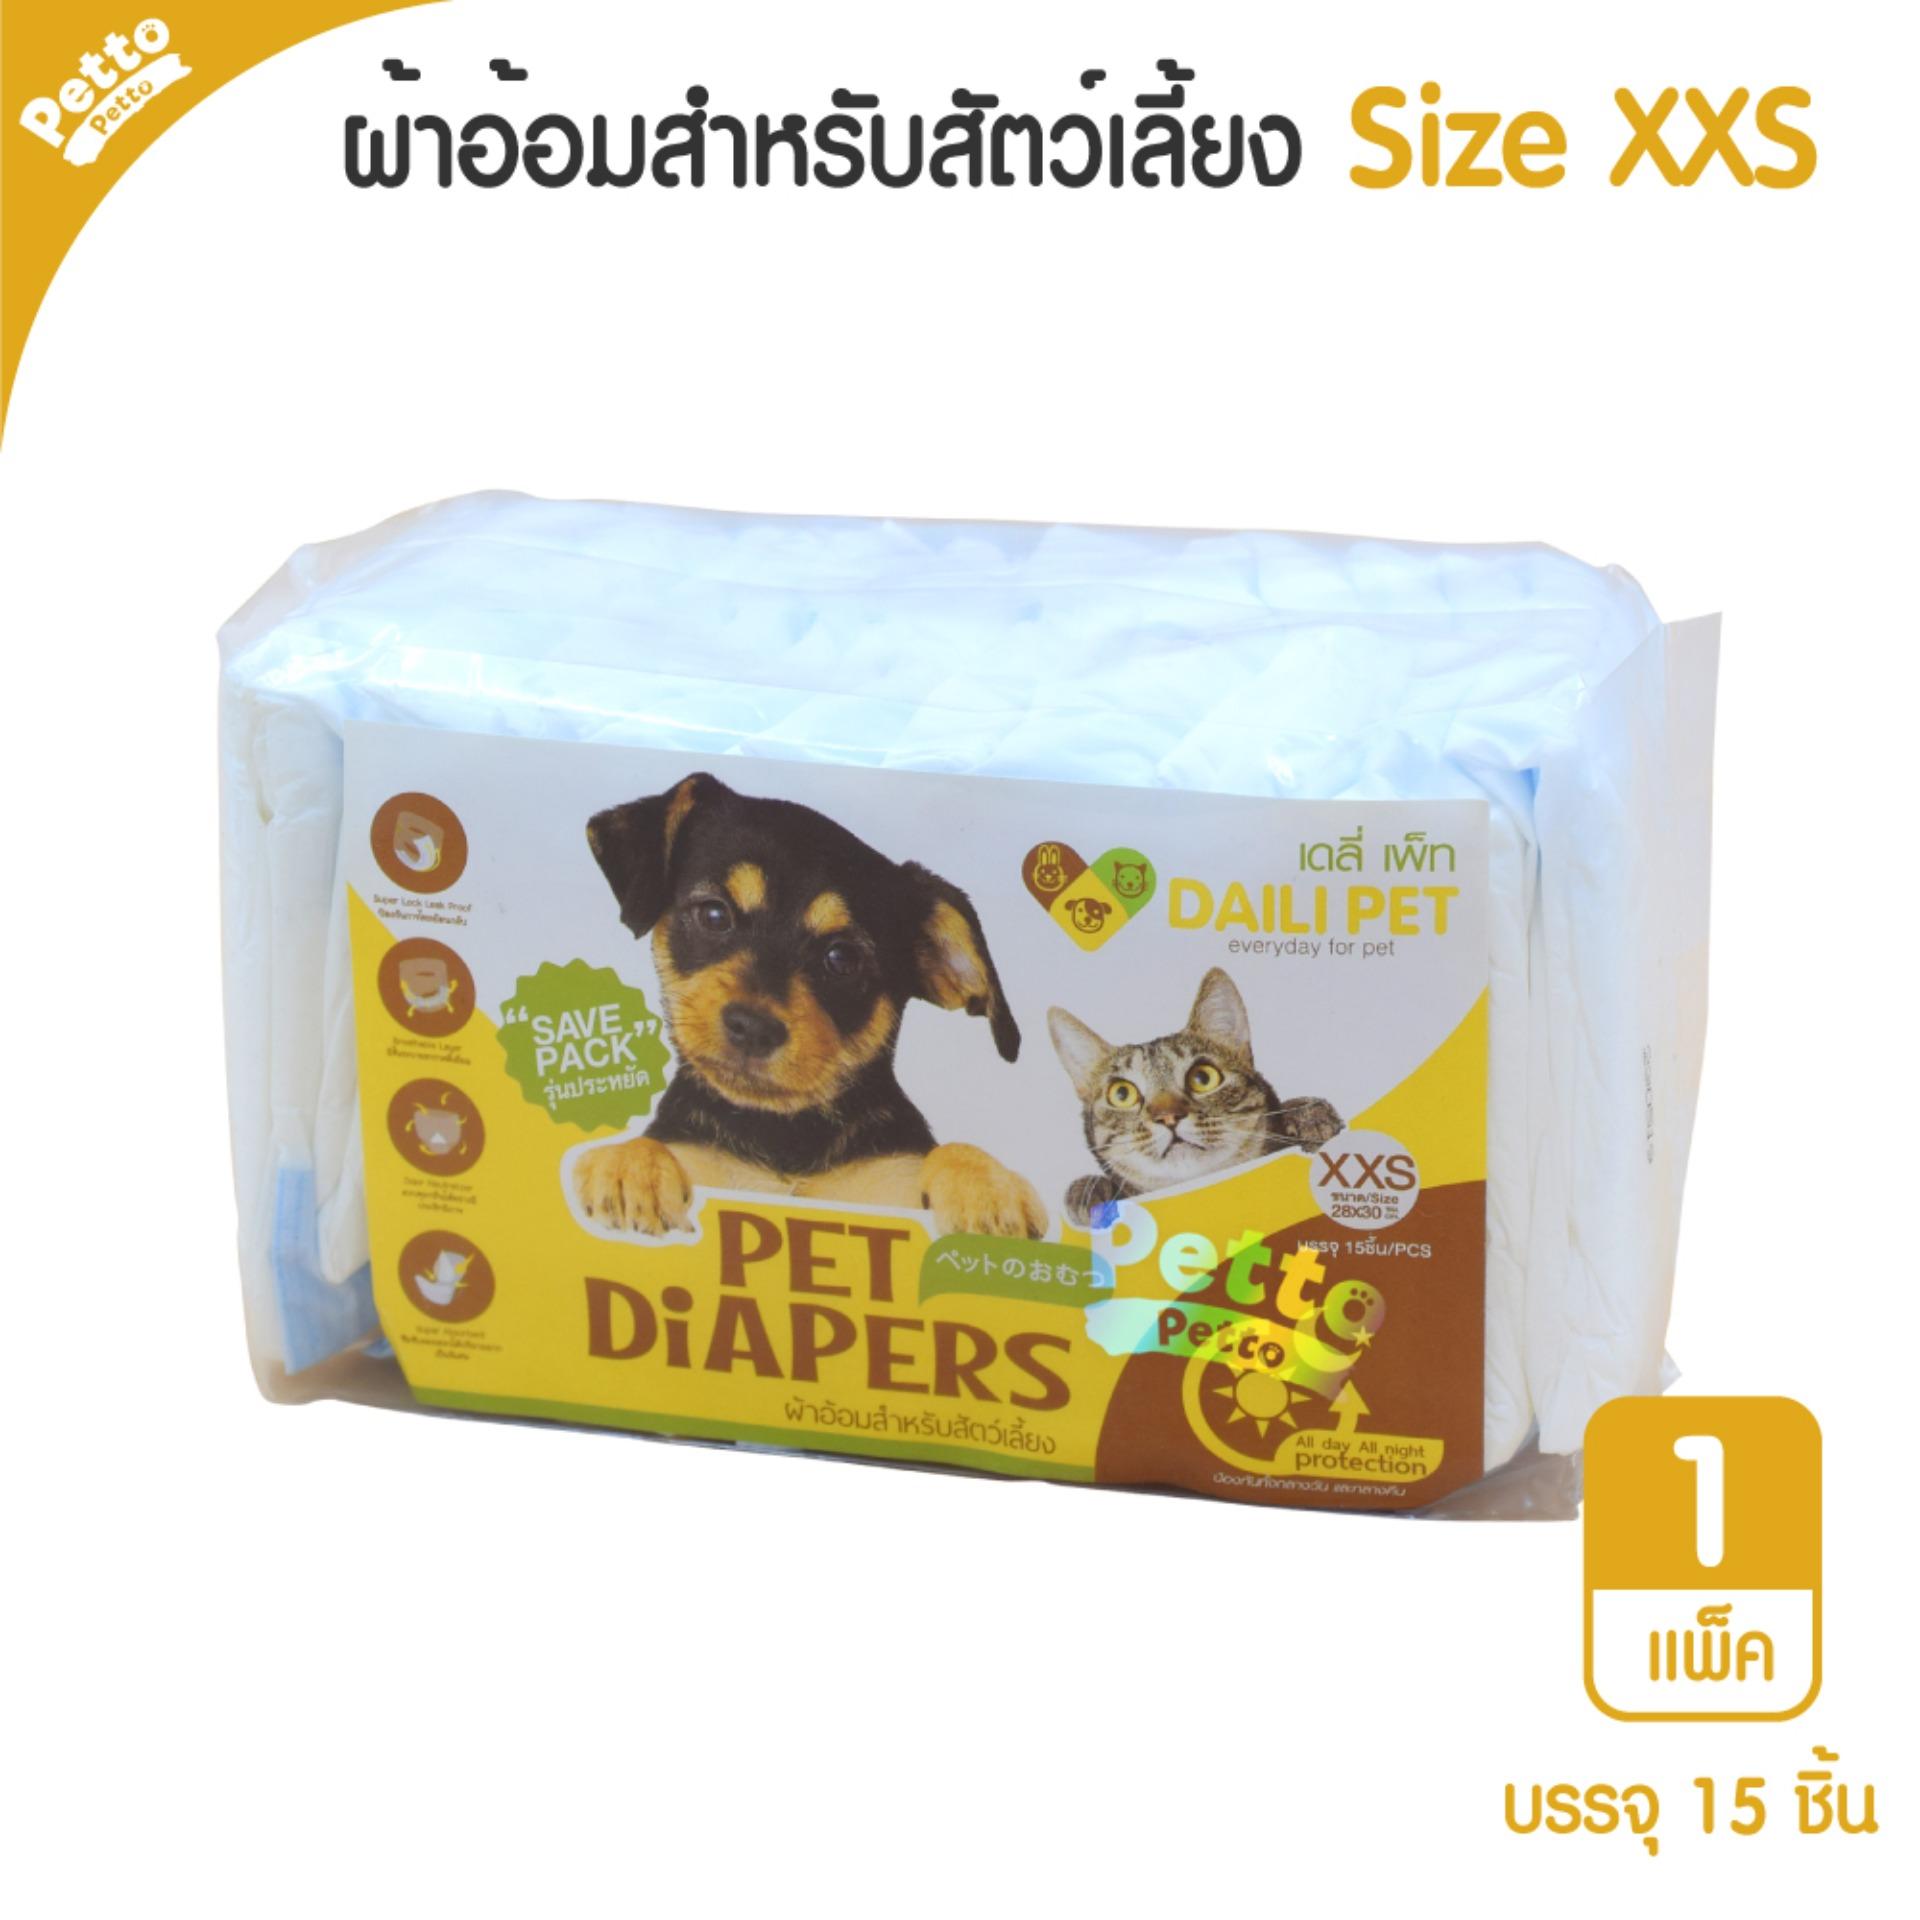 Daili Pet Diapers ผ้าอ้อมสุนัข แมว ผ้าอ้อมสำหรับสัตว์เลี้ยง Size XXS (15 ชิ้น/แพ็ค)